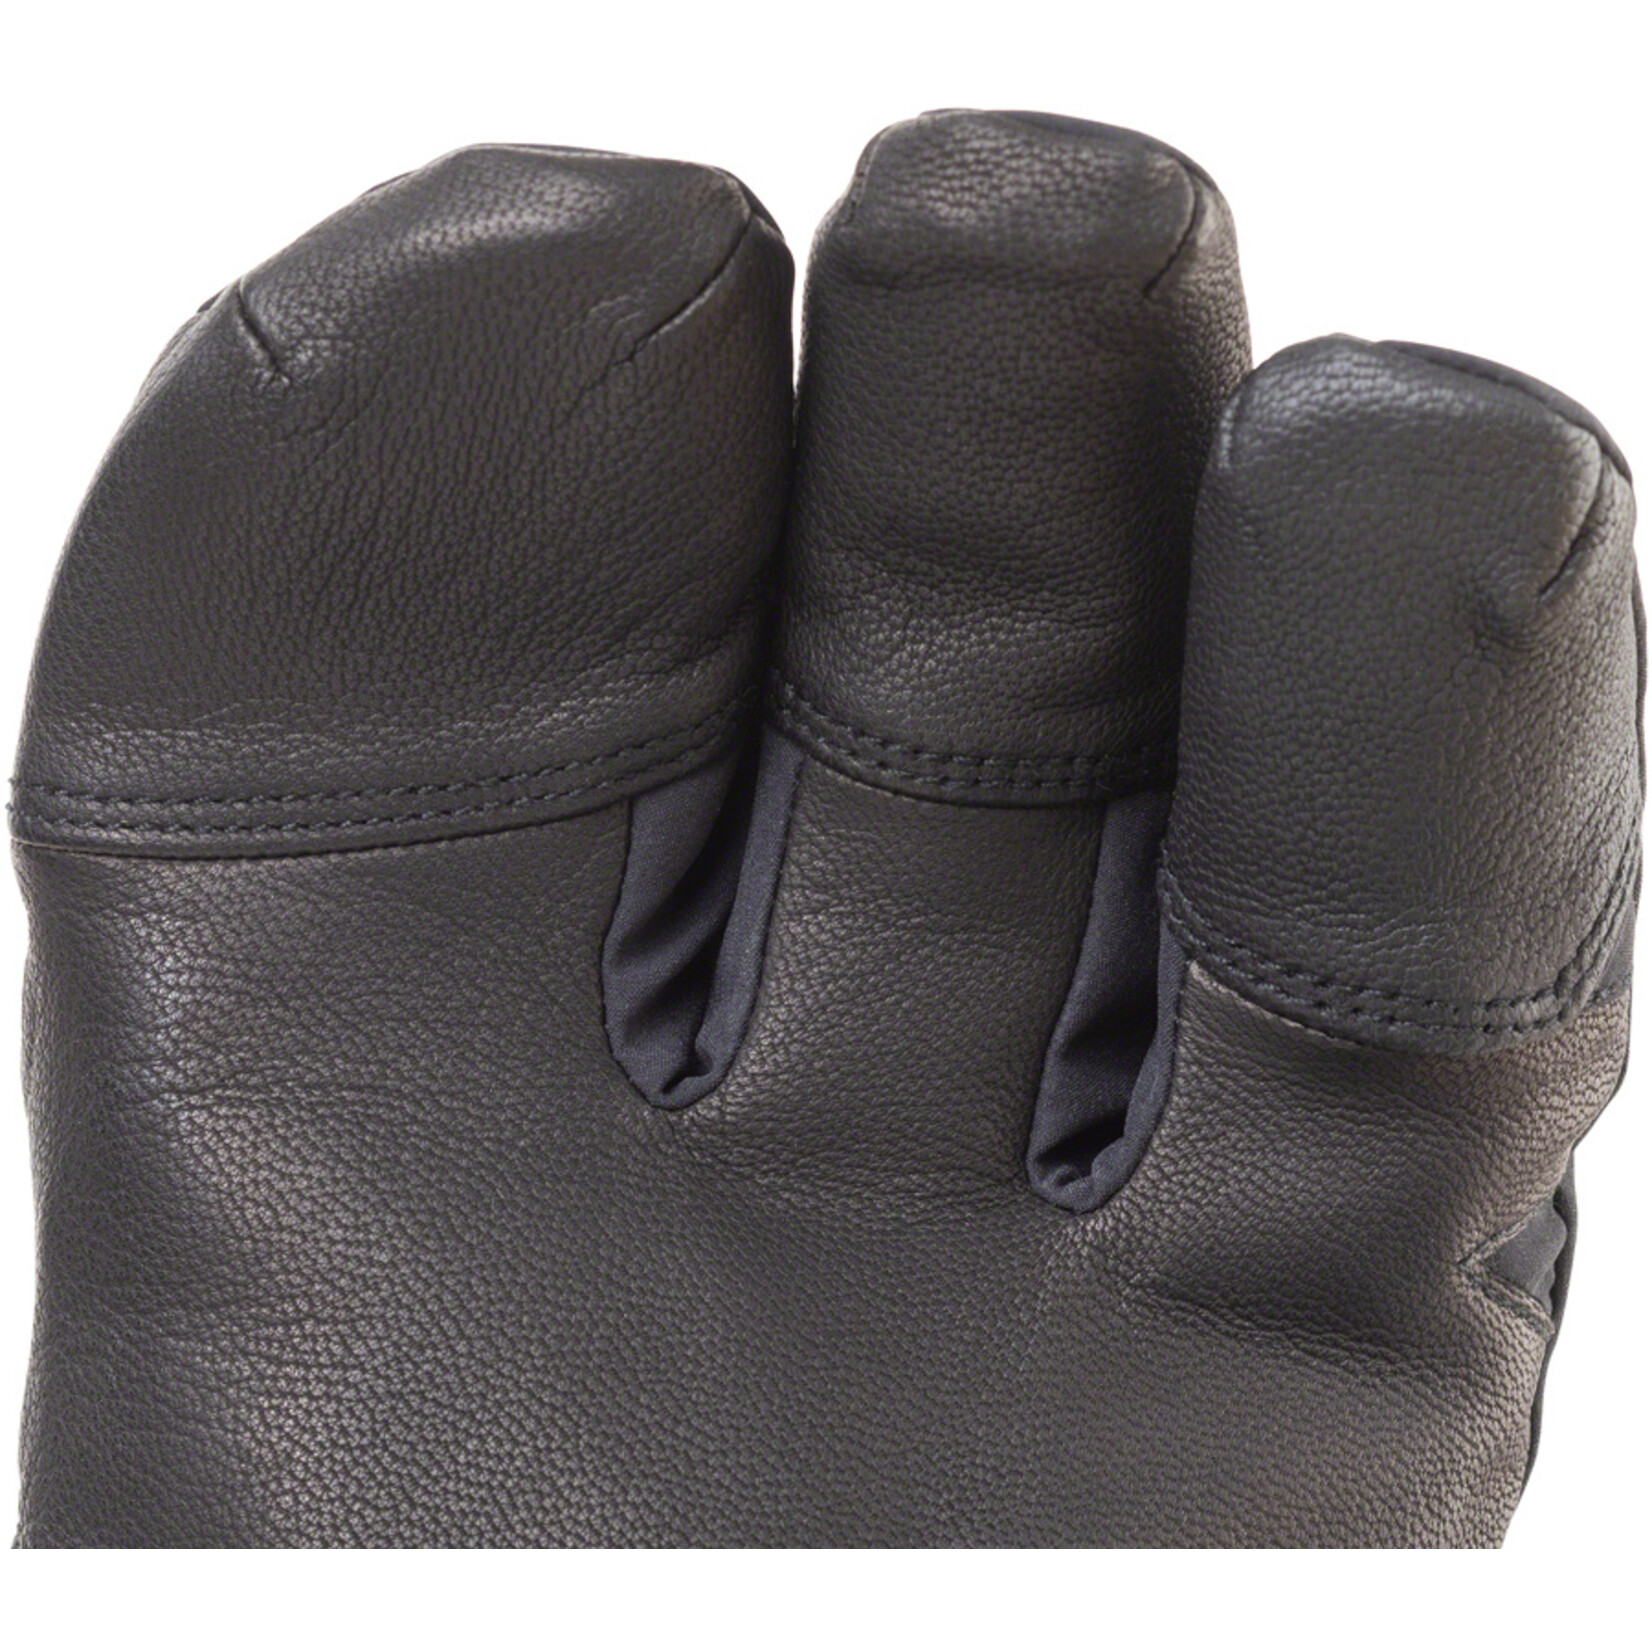 45NRTH 45NRTH Sturmfist 4 Finger Glove - Black, Full Finger, Large (9)